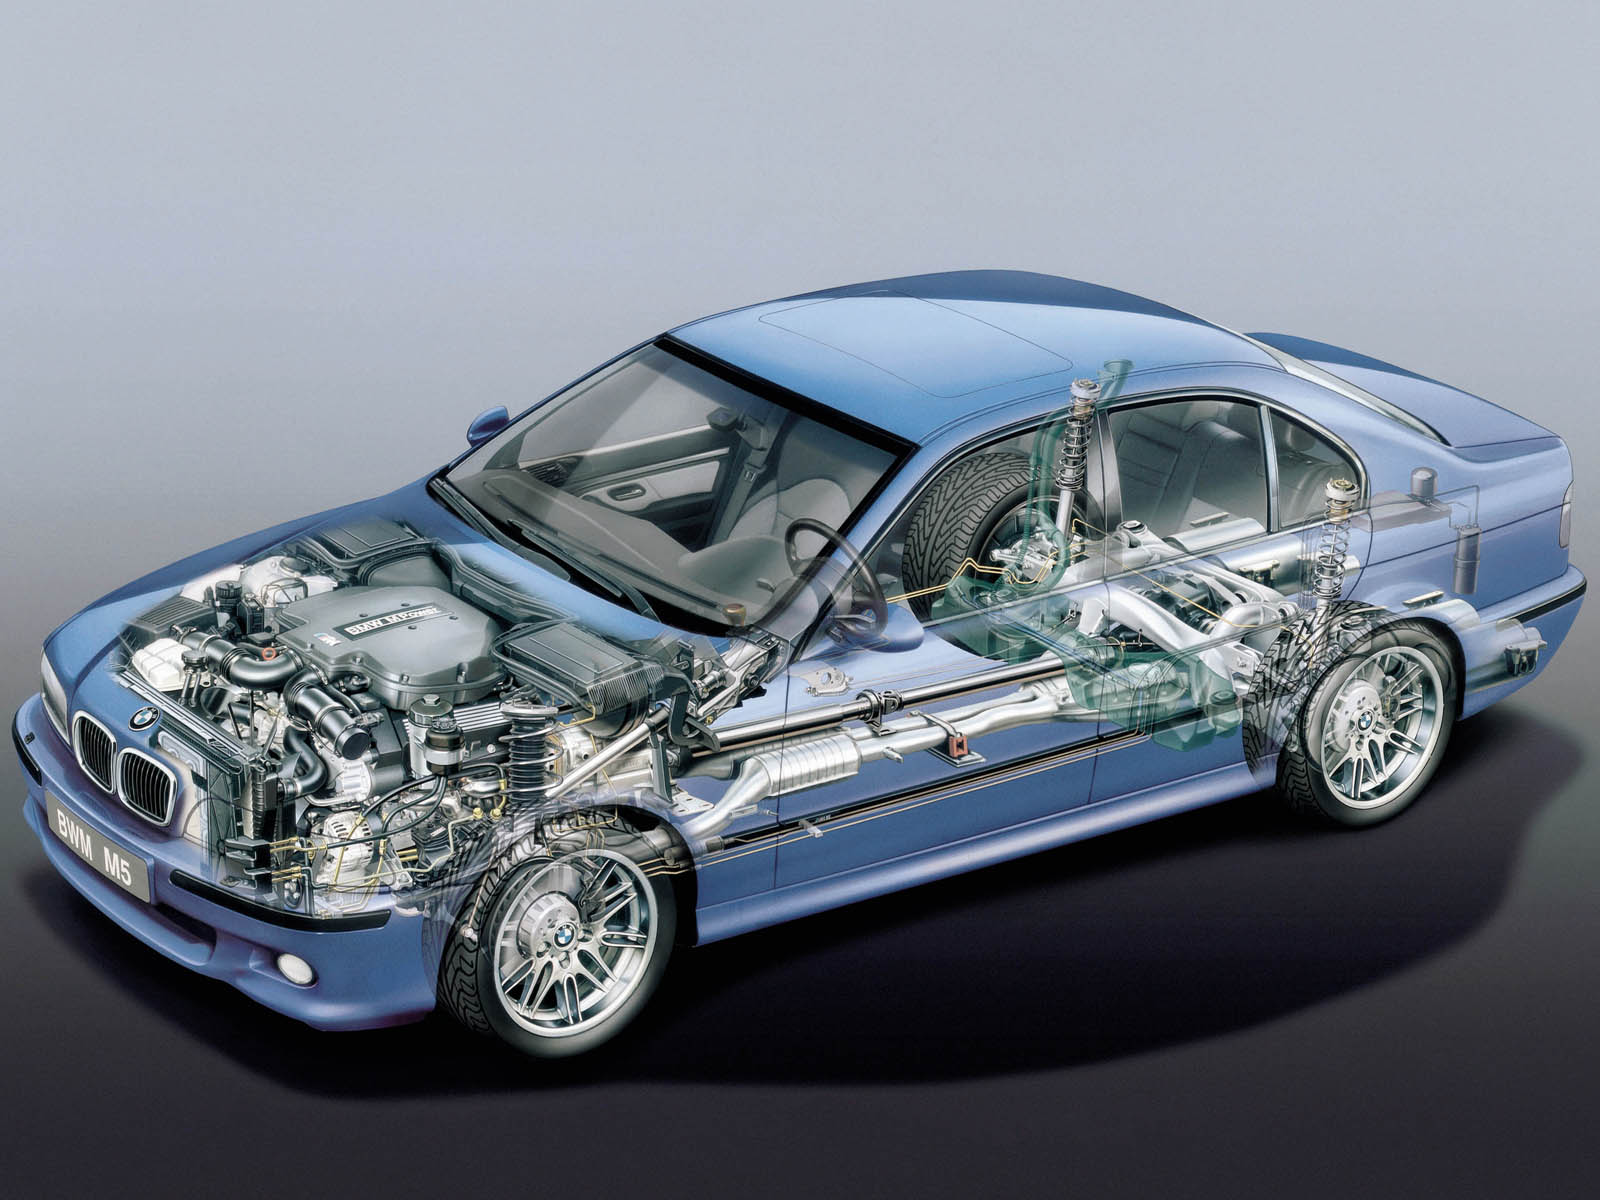 BMW S62 engine